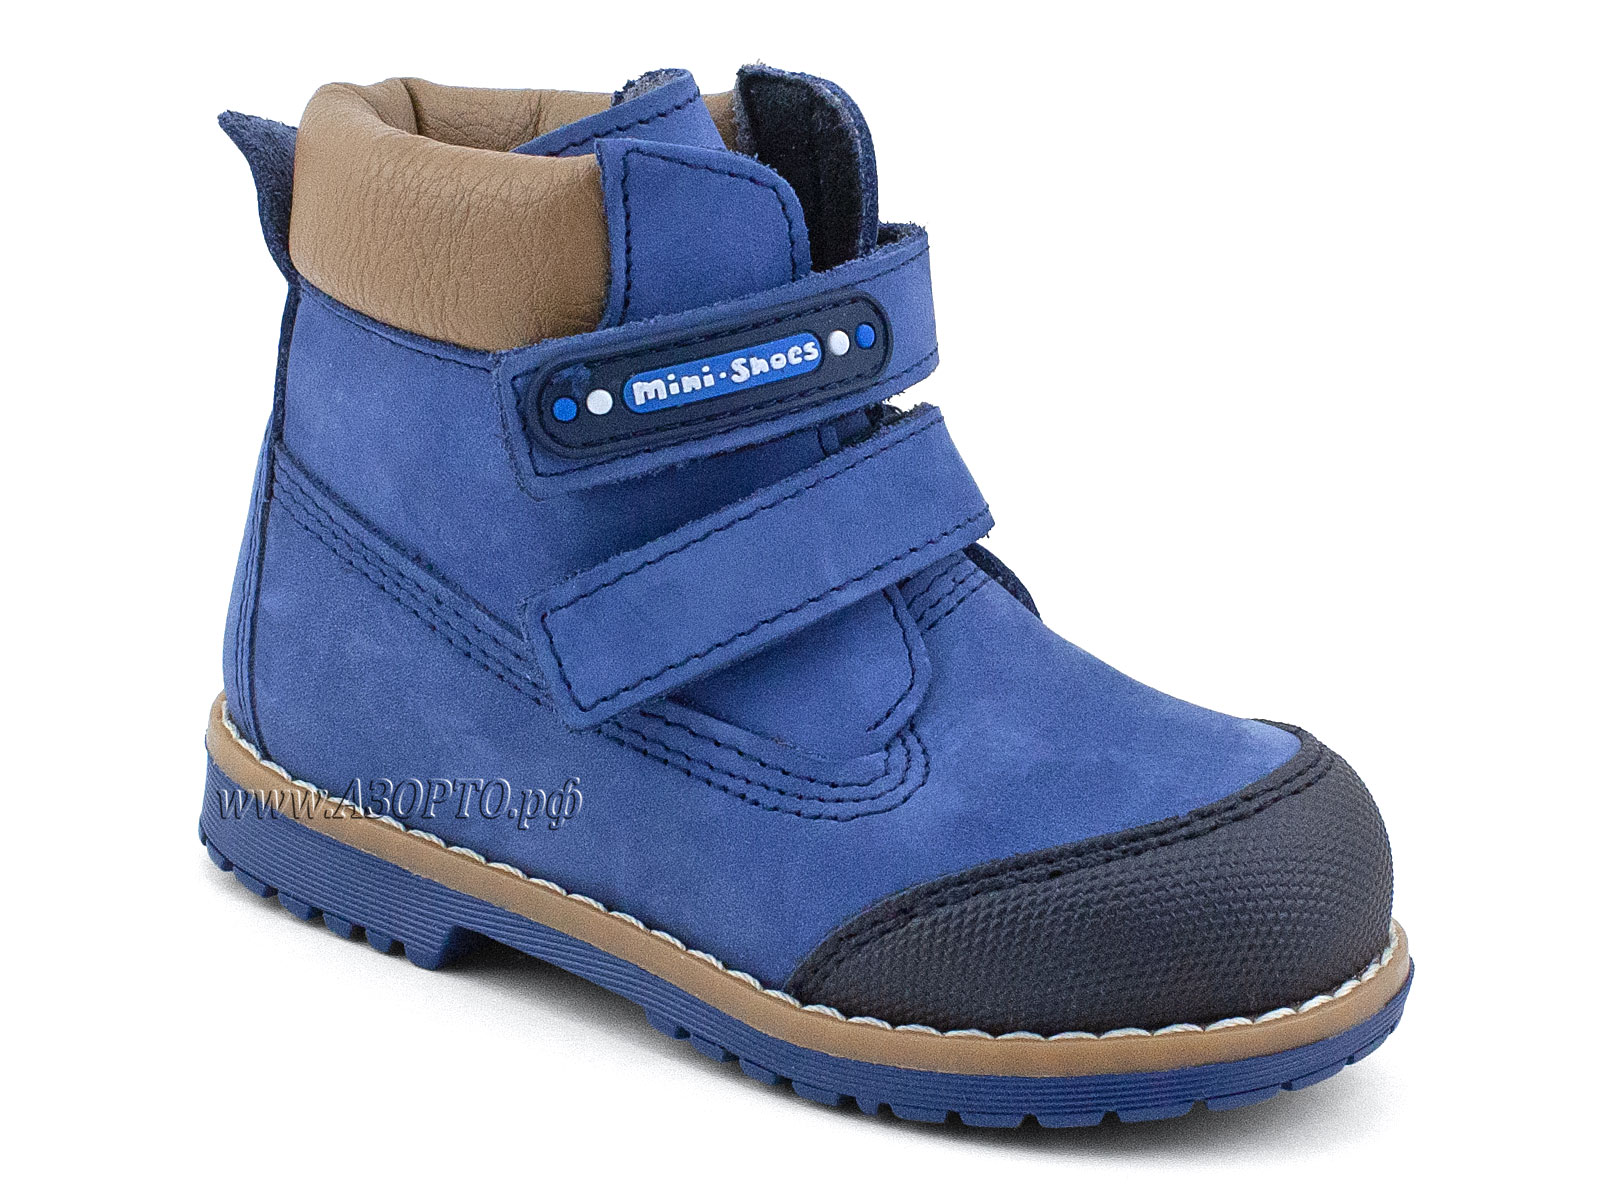 505 Д(23-25) Минишуз (Minishoes), ботинки ортопедические профилактические, демисезонные утепленные, нубук, байка, джинс